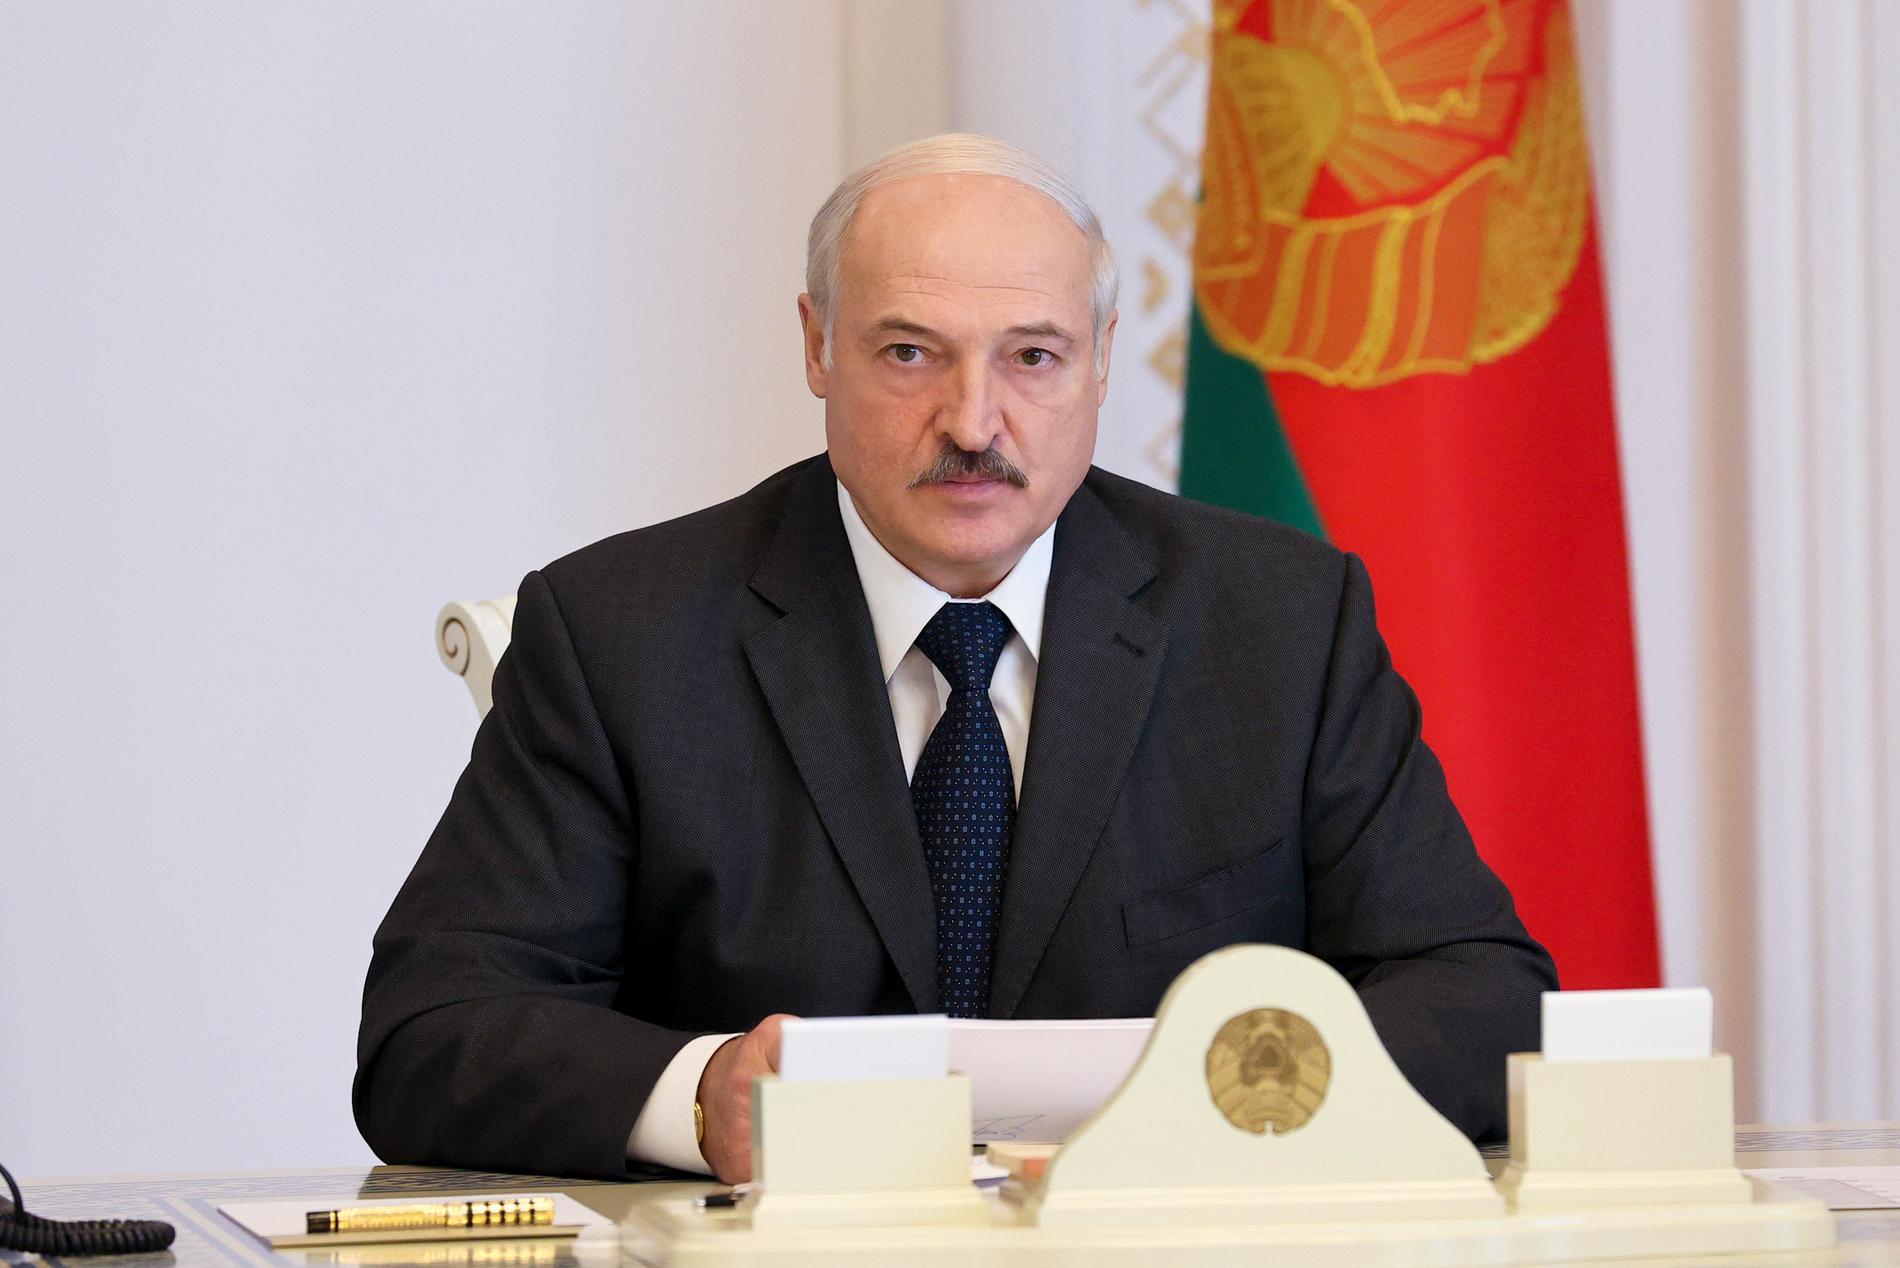 Enligt officiella siffror vann Aleksandr Lukasjenko förra helgens val med 80 procent av rösterna. Men valet har dömts ut av omvärlden.